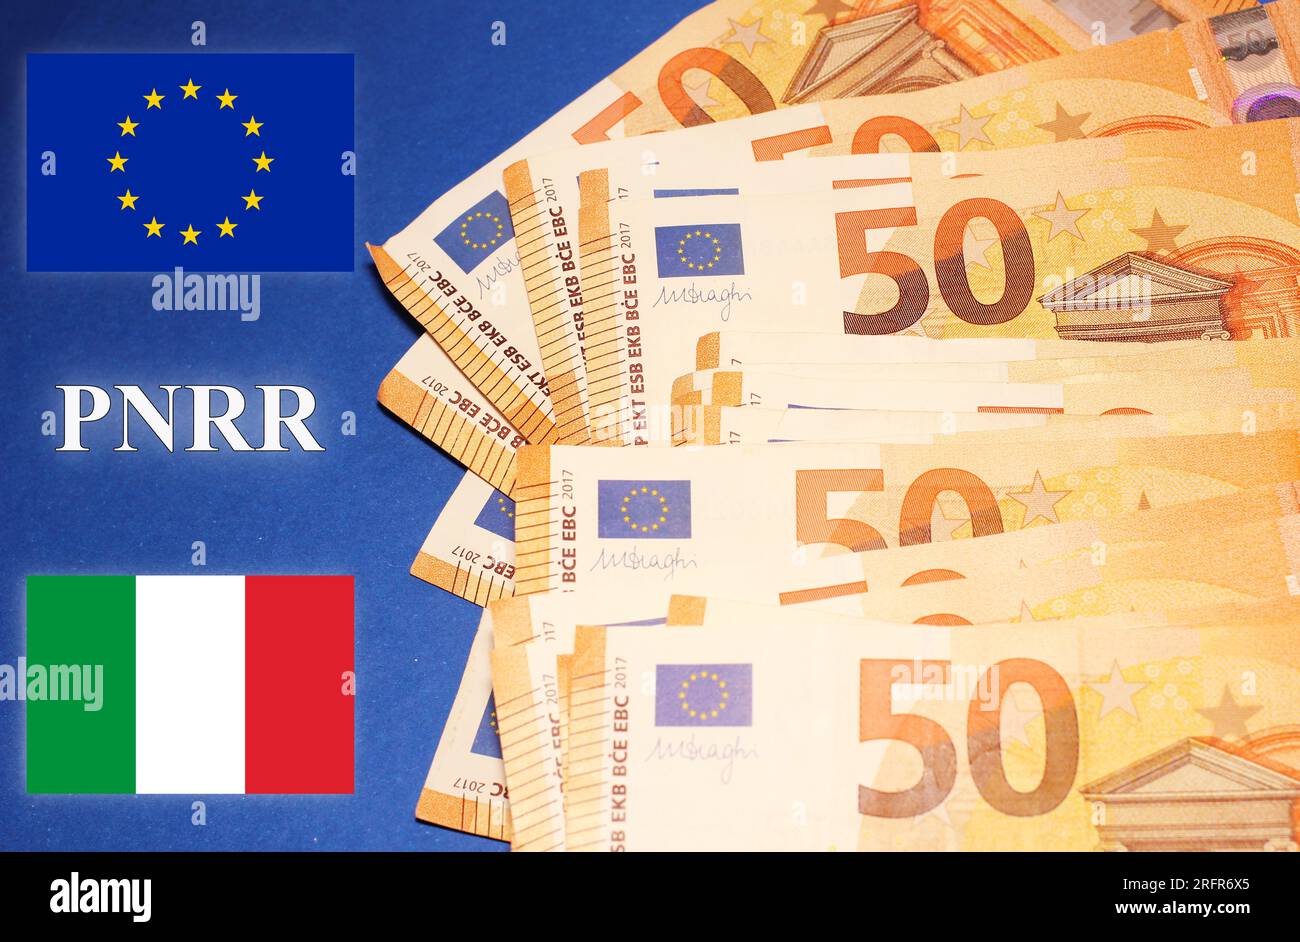 Drapeaux italiens et européens avec le signe "Pnrr", concept d'aide financière Banque D'Images